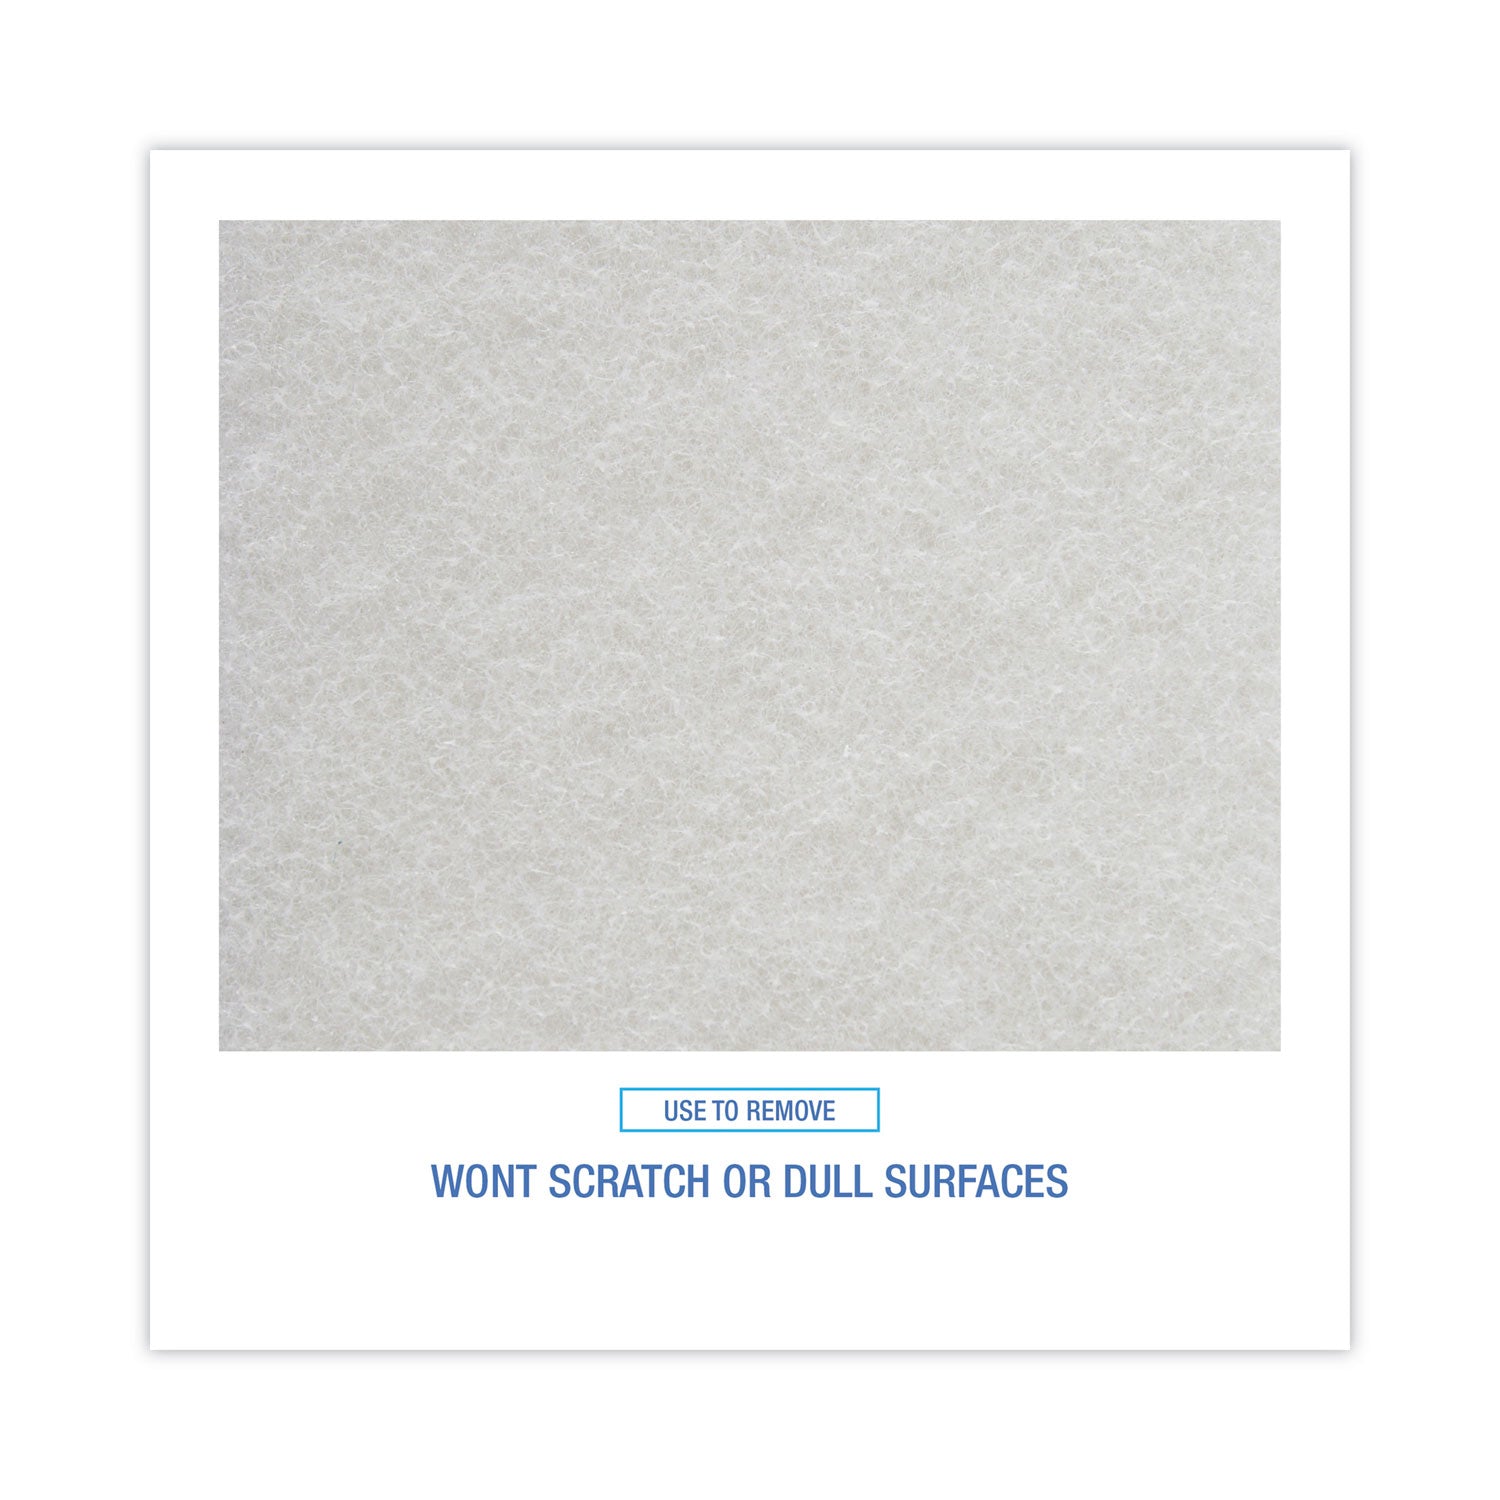 Light Duty Scour Pad, White, 6 x 9, White, 20/Carton - 